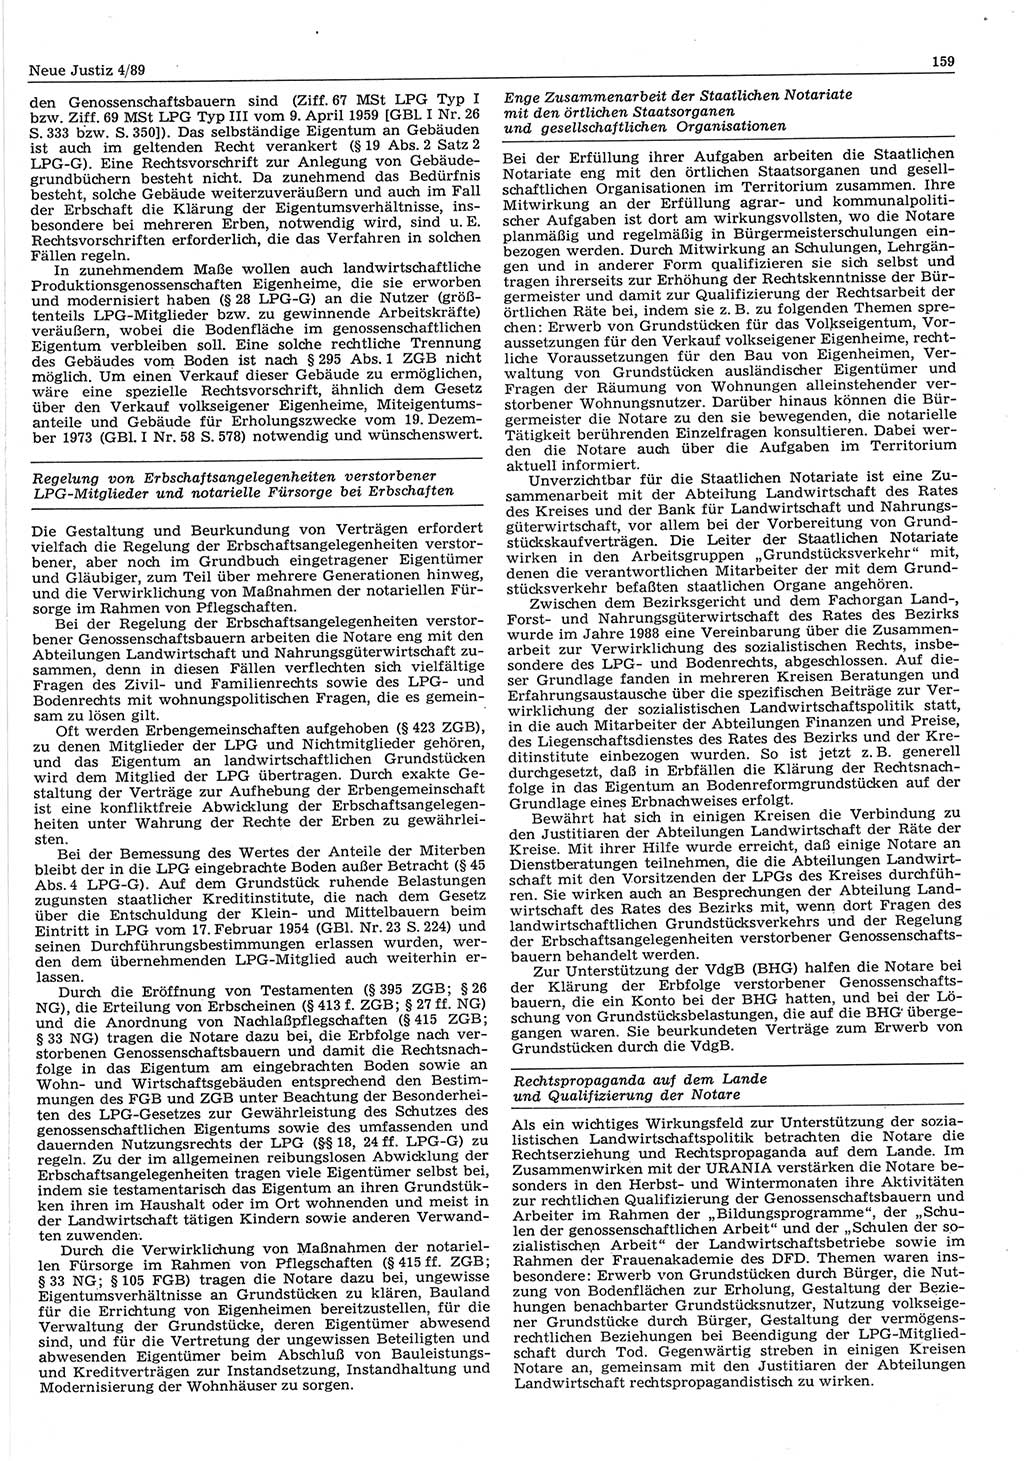 Neue Justiz (NJ), Zeitschrift für sozialistisches Recht und Gesetzlichkeit [Deutsche Demokratische Republik (DDR)], 43. Jahrgang 1989, Seite 159 (NJ DDR 1989, S. 159)